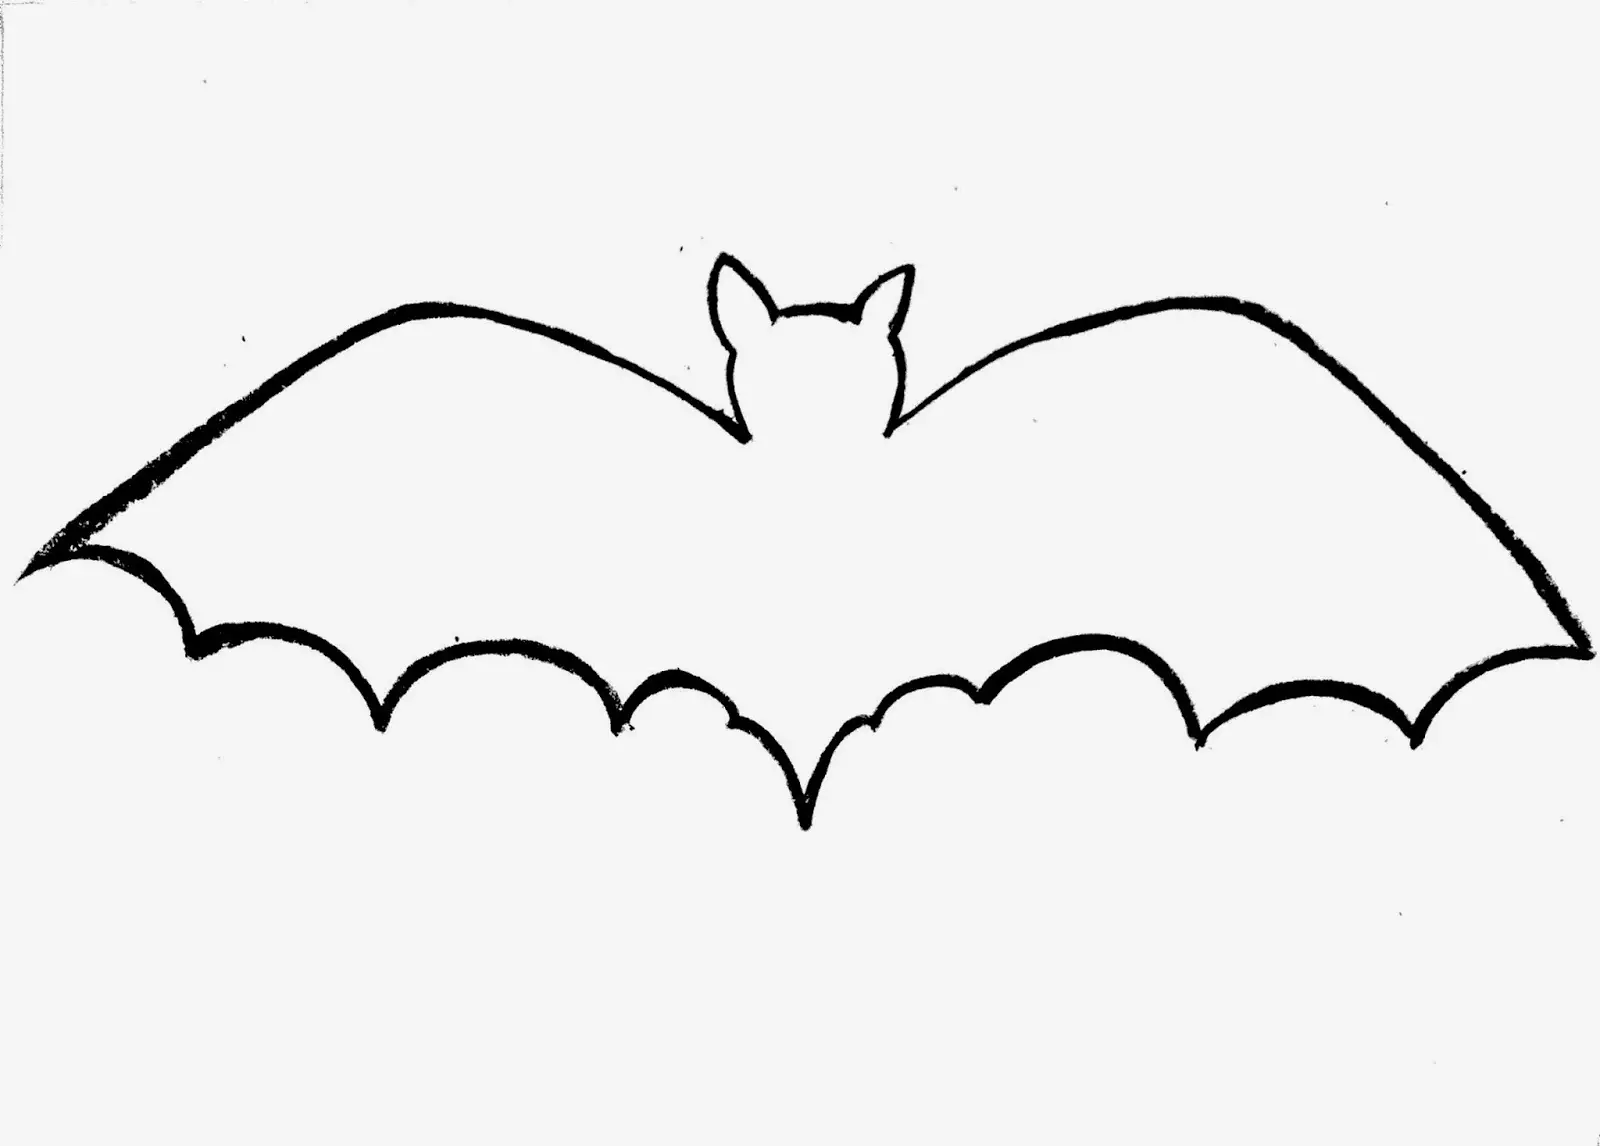 Molde de Morcego para Imprimir e Recortar  Molde morcego, Máscara de  morcego, Molde